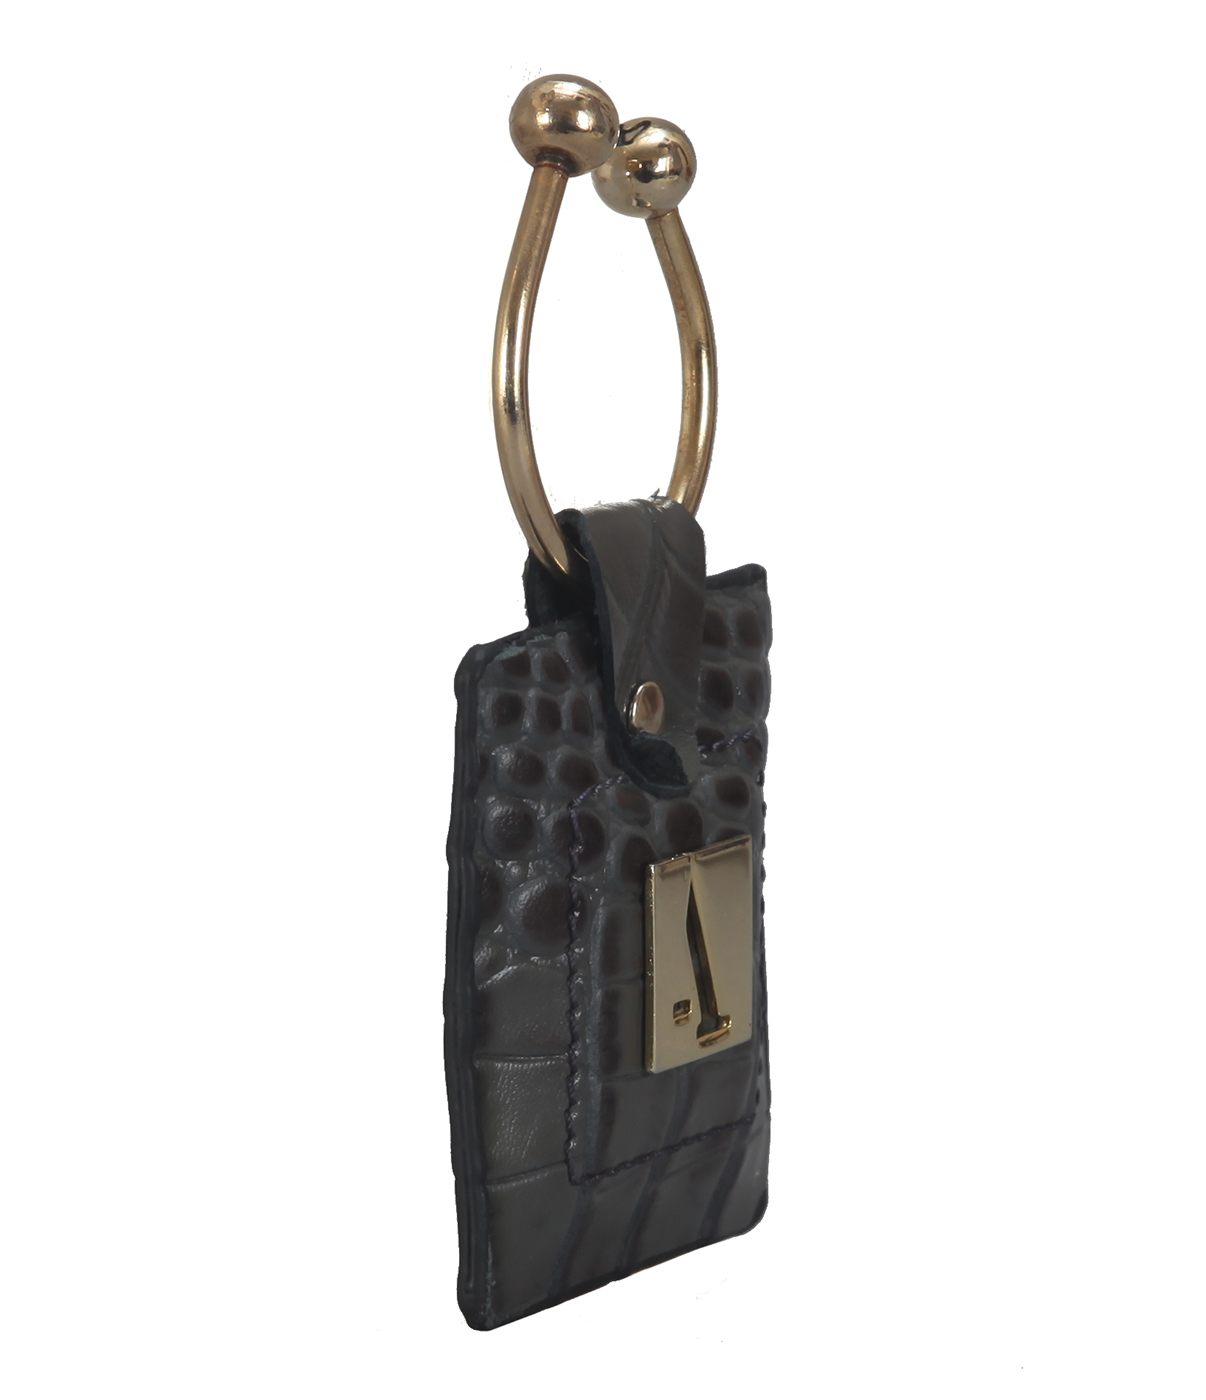 W269--Key holder with knob screw key fitting in Genuine Leather - Grey